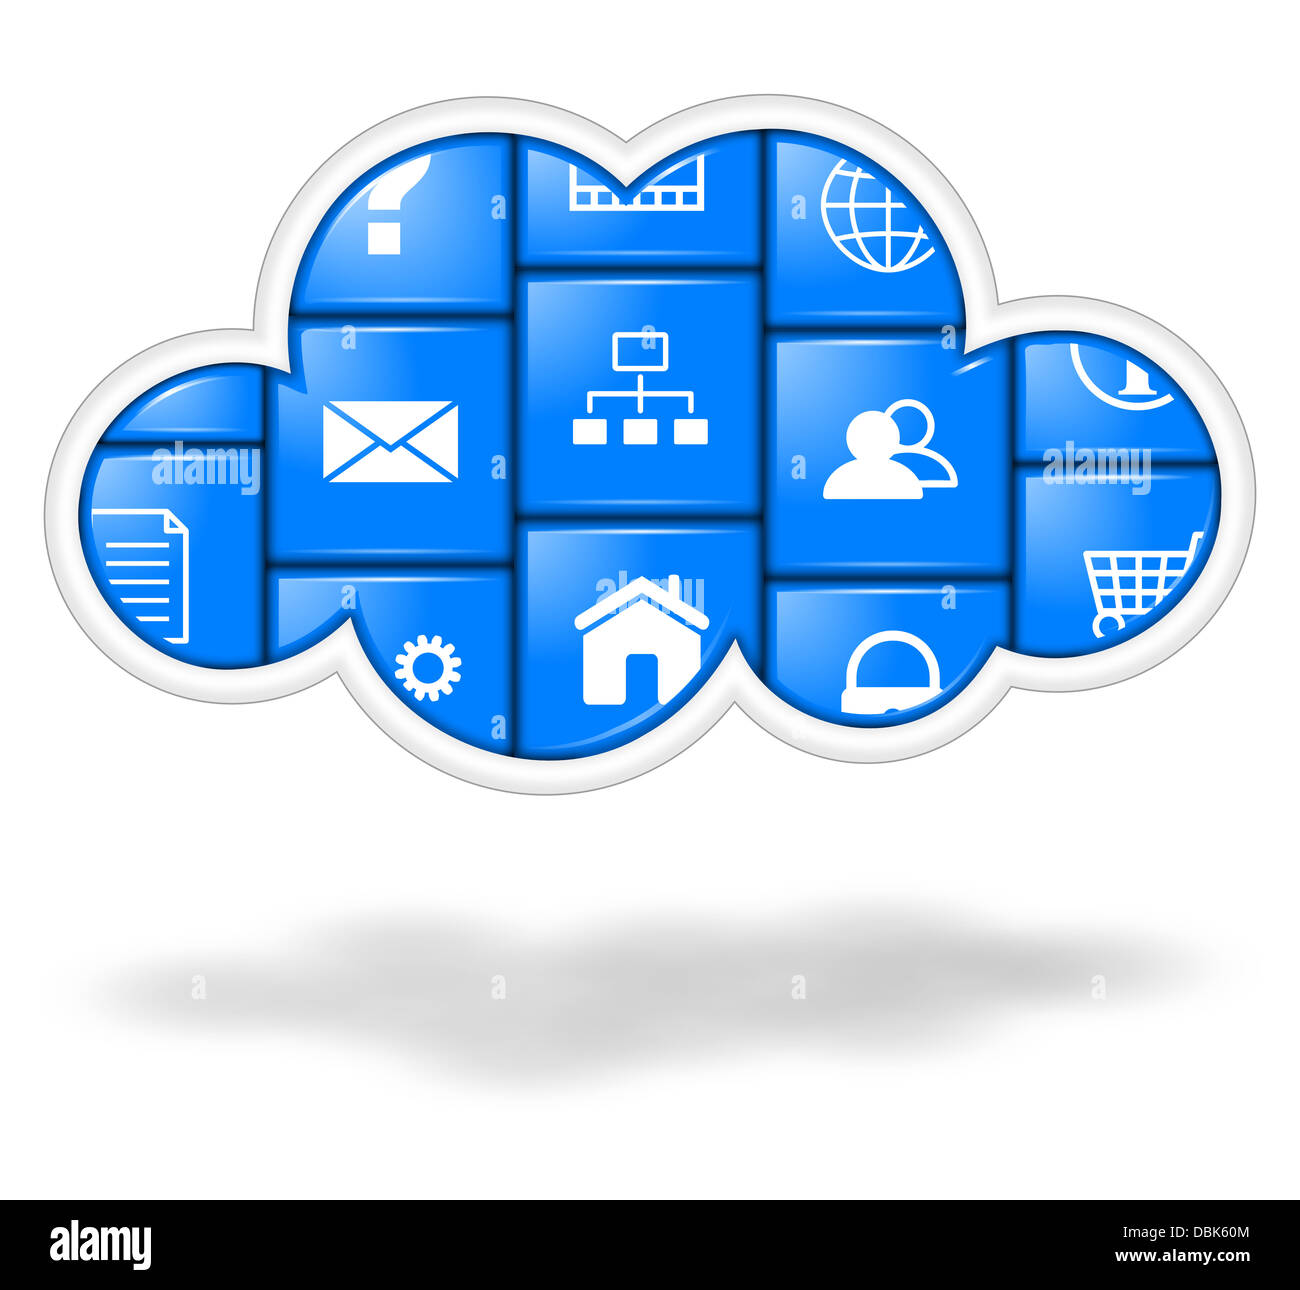 Blue cloud con i pulsanti delle applicazioni illustrazione, cloud computing concept Foto Stock